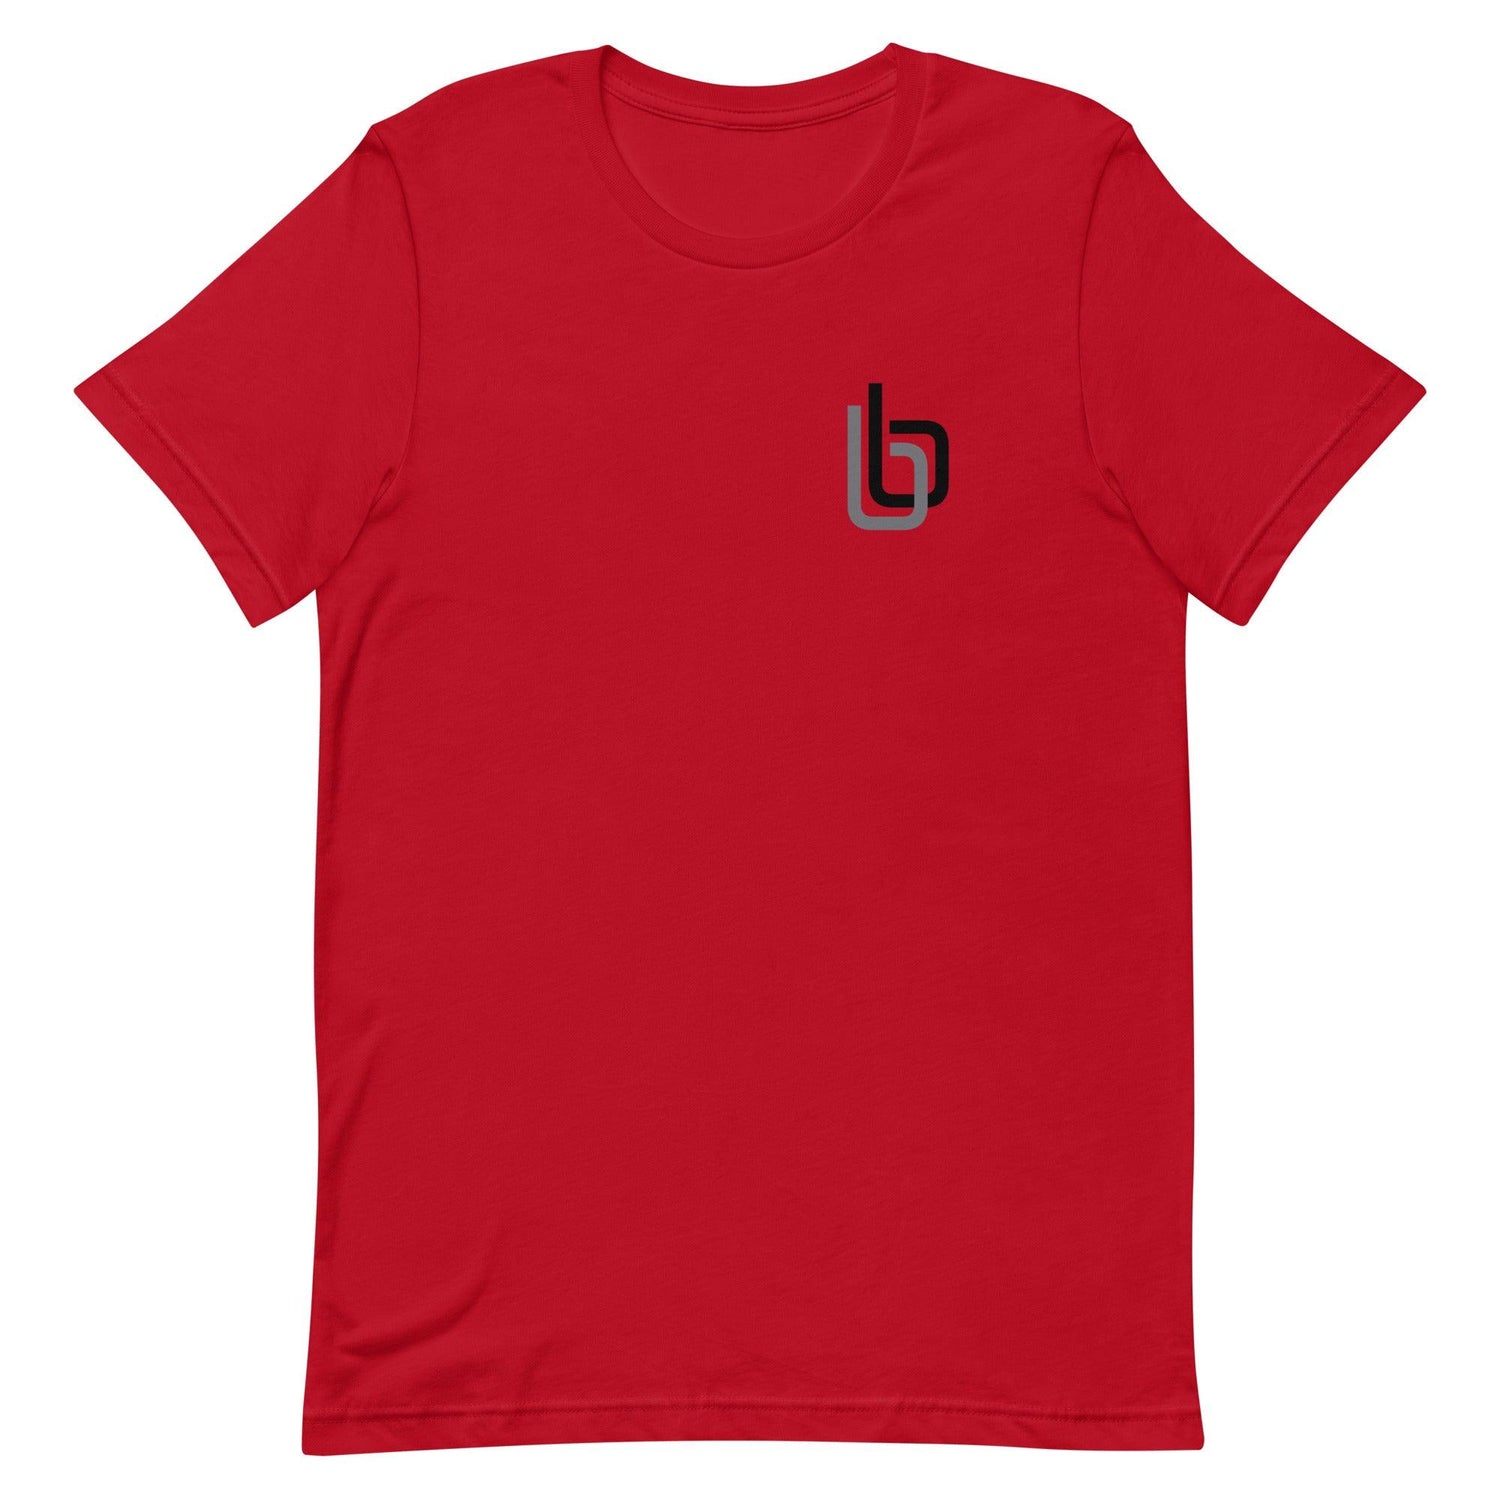 Byron Buxton “bb” t-shirt - Fan Arch